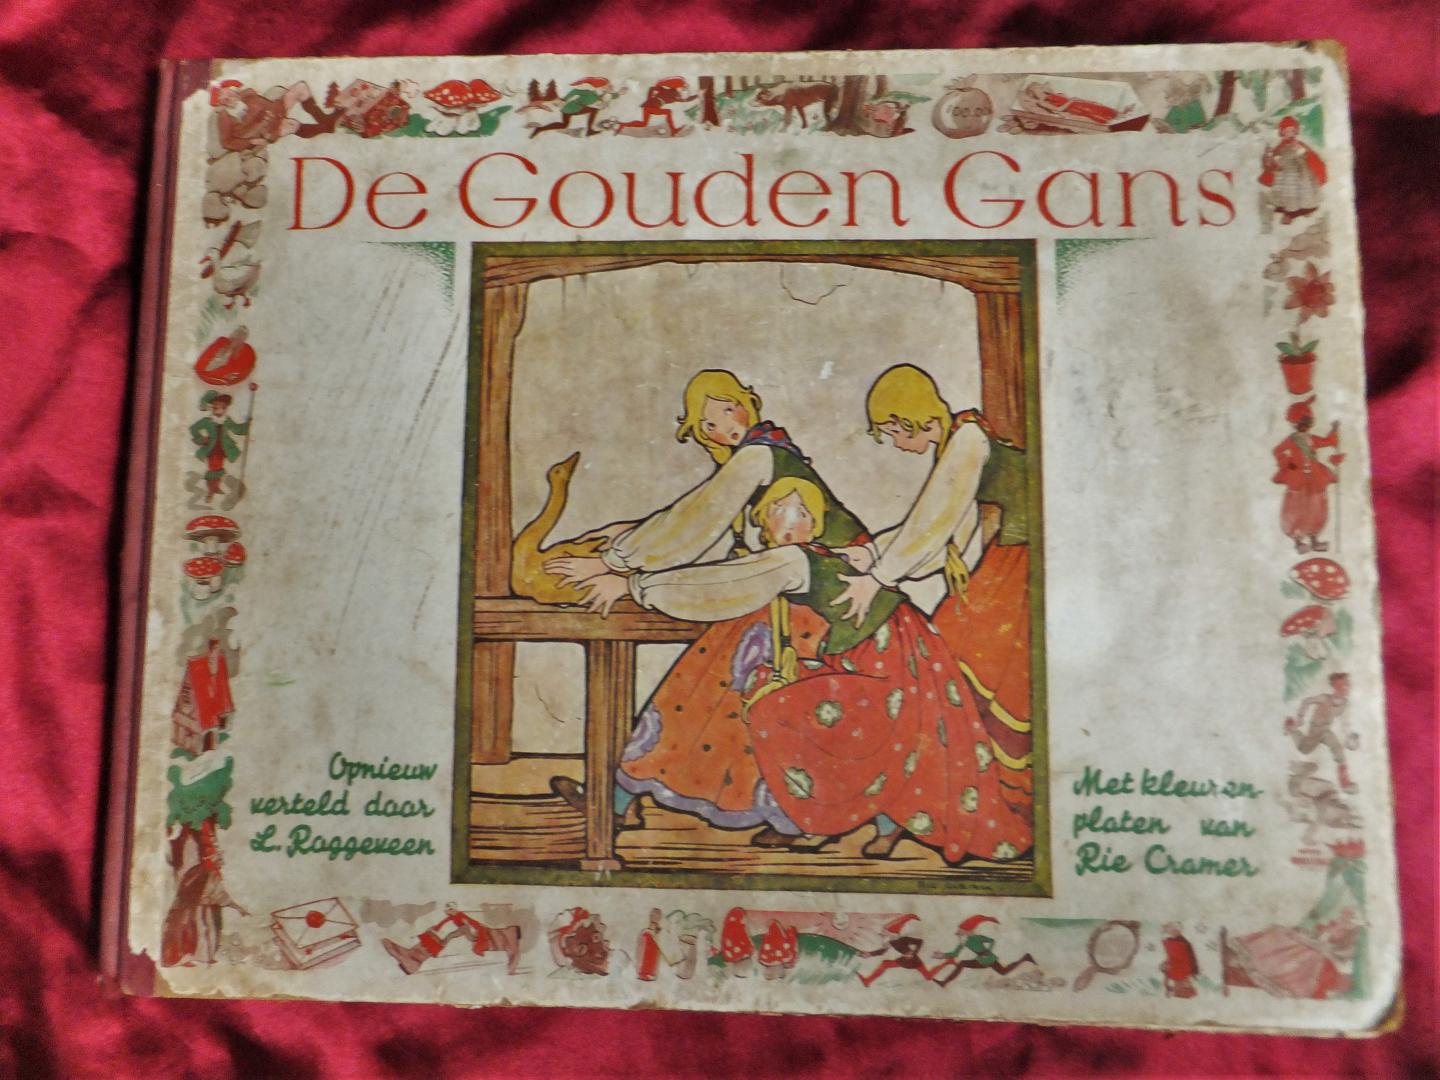 Roggeveen, Leonard - De gouden gans. Met kleurenplaten van Rie Cramer. [1.dr]